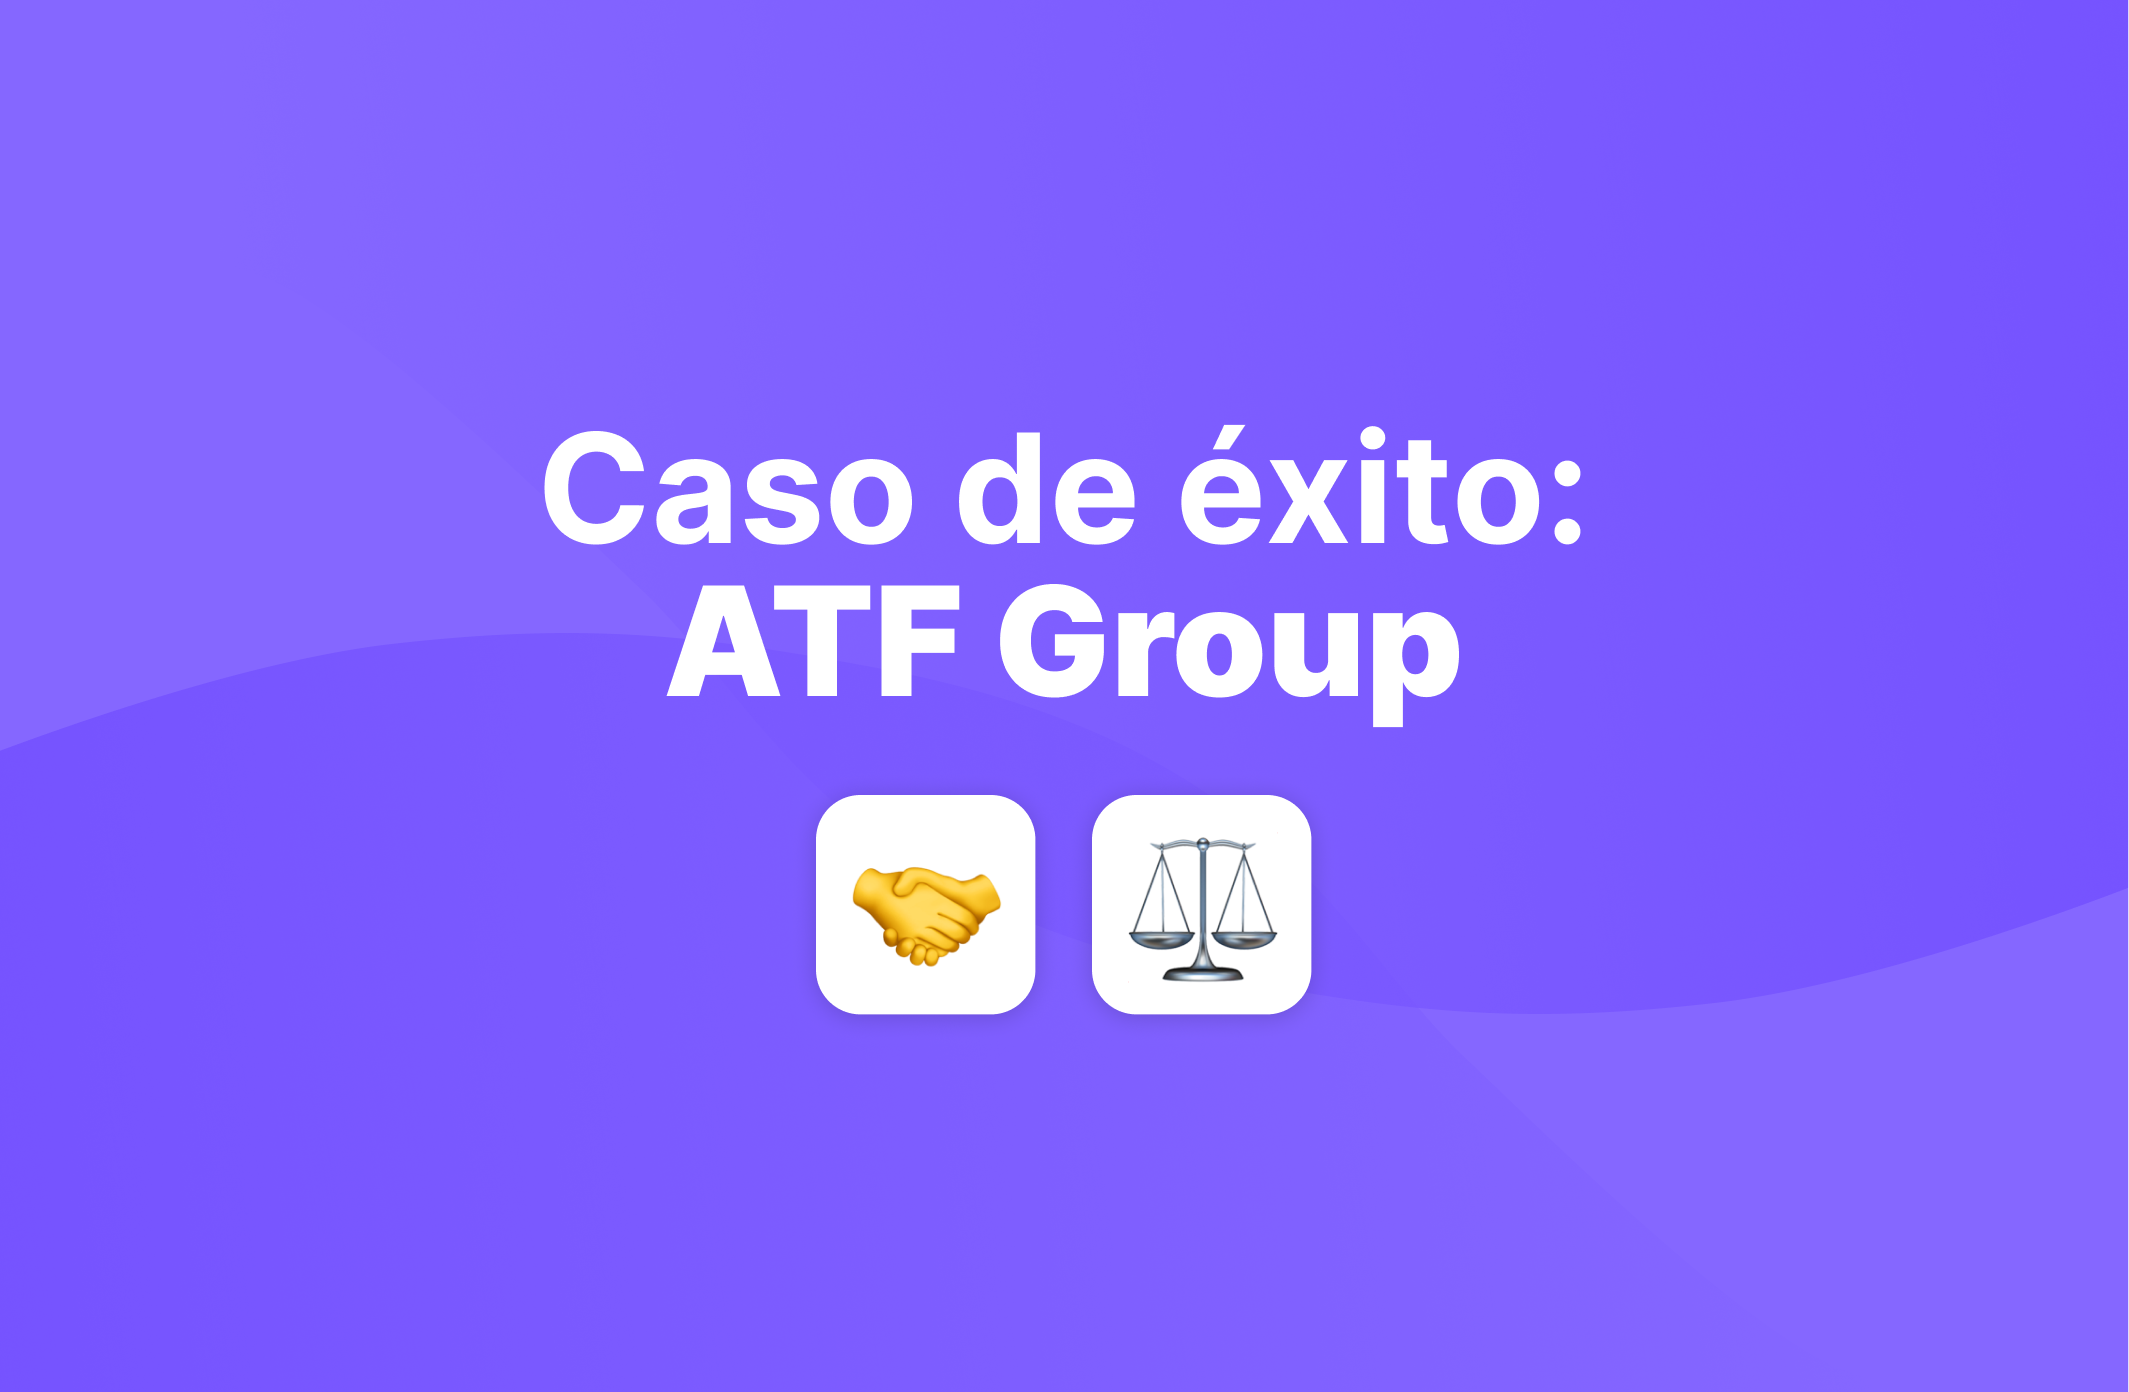 Caso de éxito: ATF Group